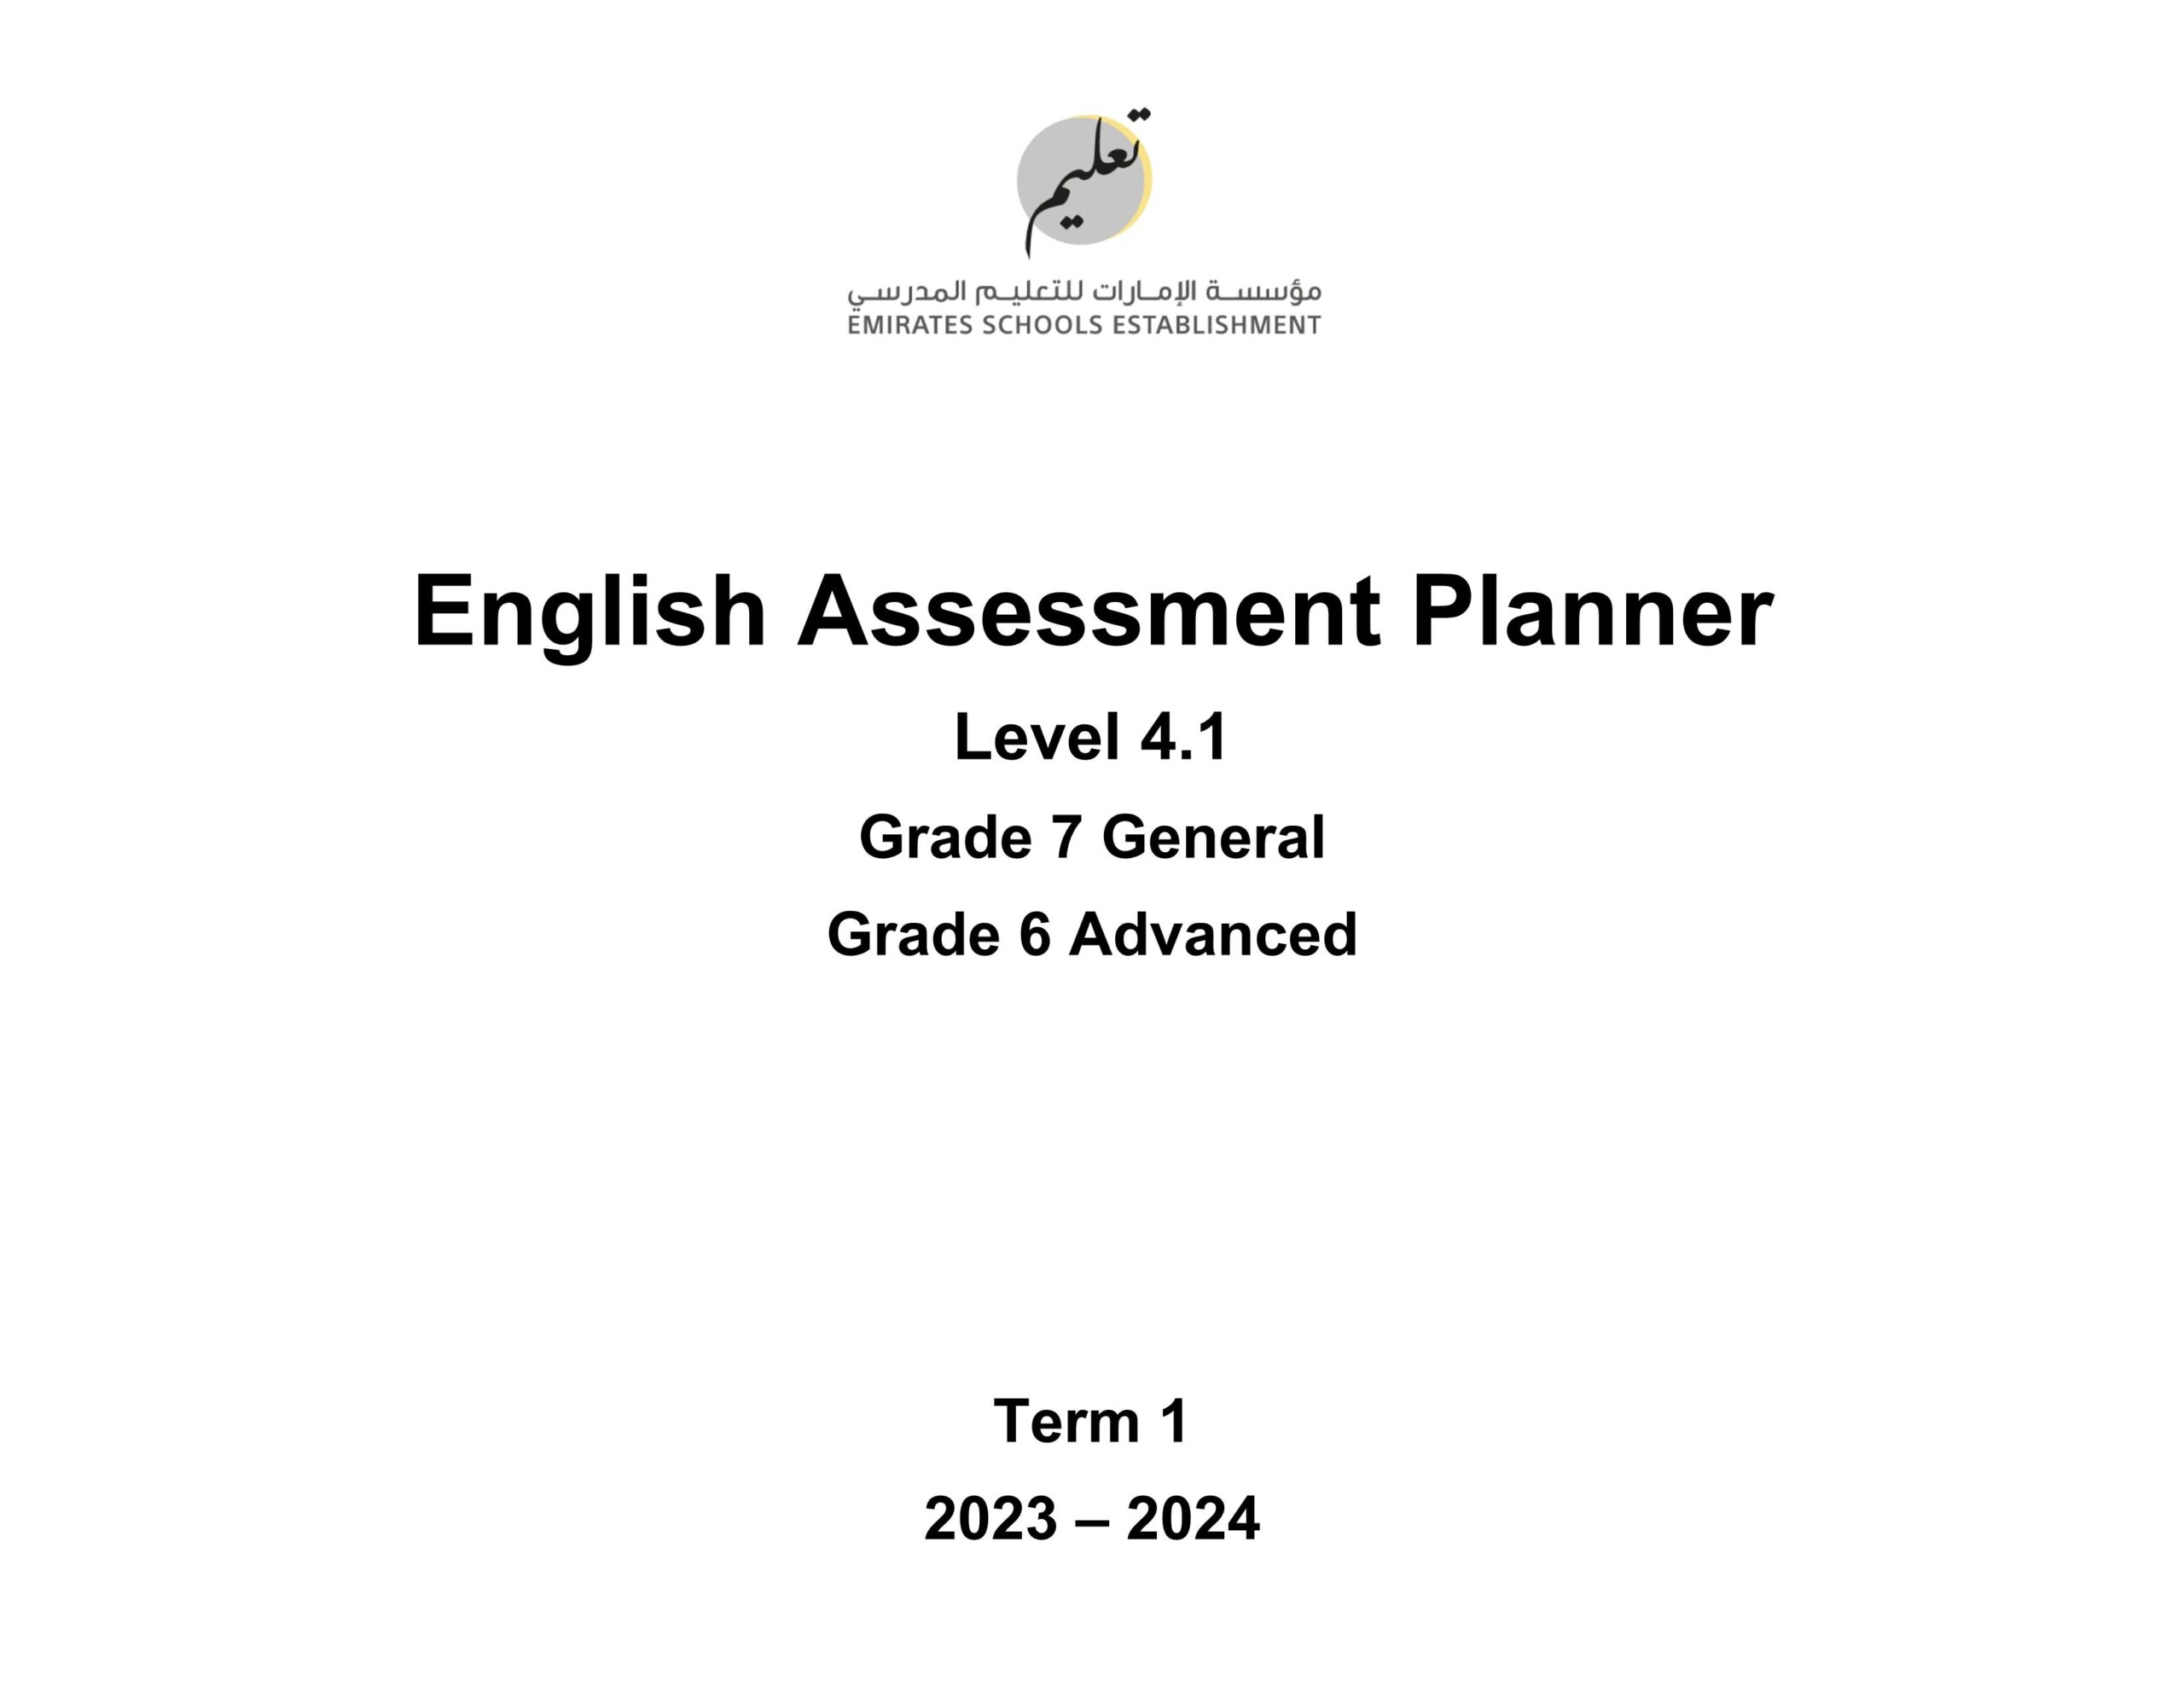 صيغة الامتحان النهائي Assessment Planner 4.1 اللغة الإنجليزية السادس متقدم والسابع عام الفصل الدراسي الأول2023-2024